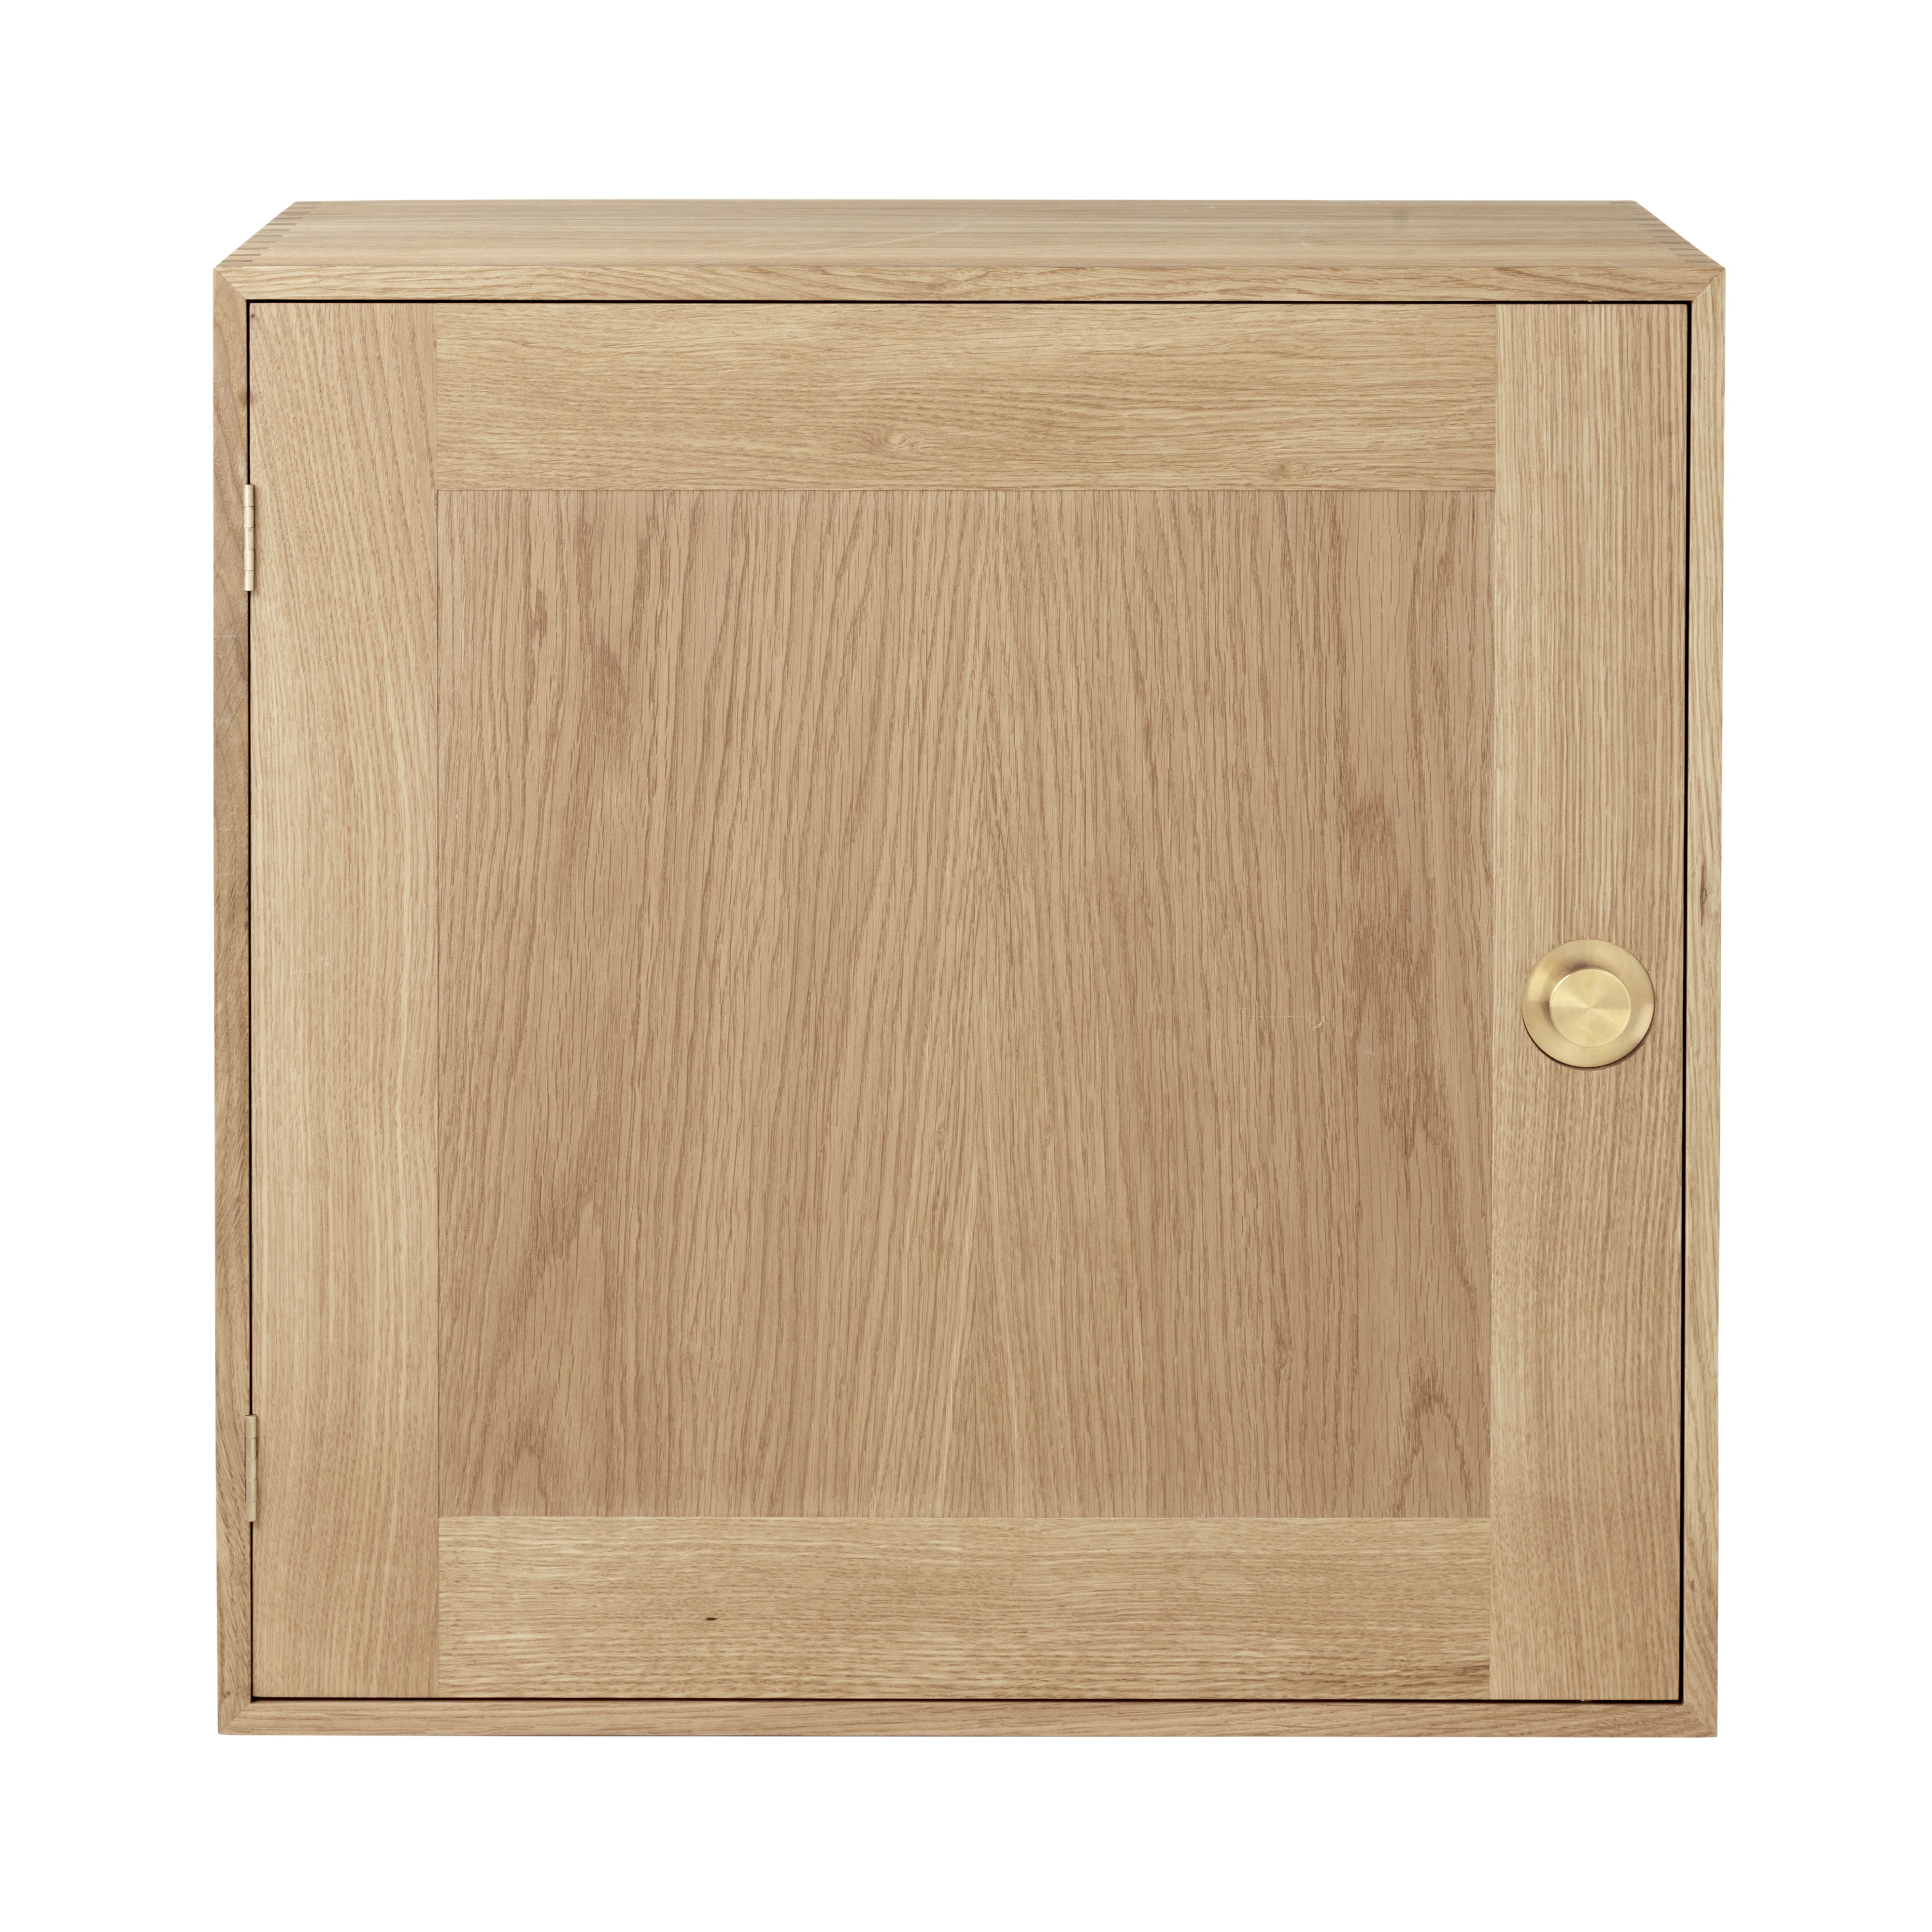 FK63 Cabinet: Oiled Oak